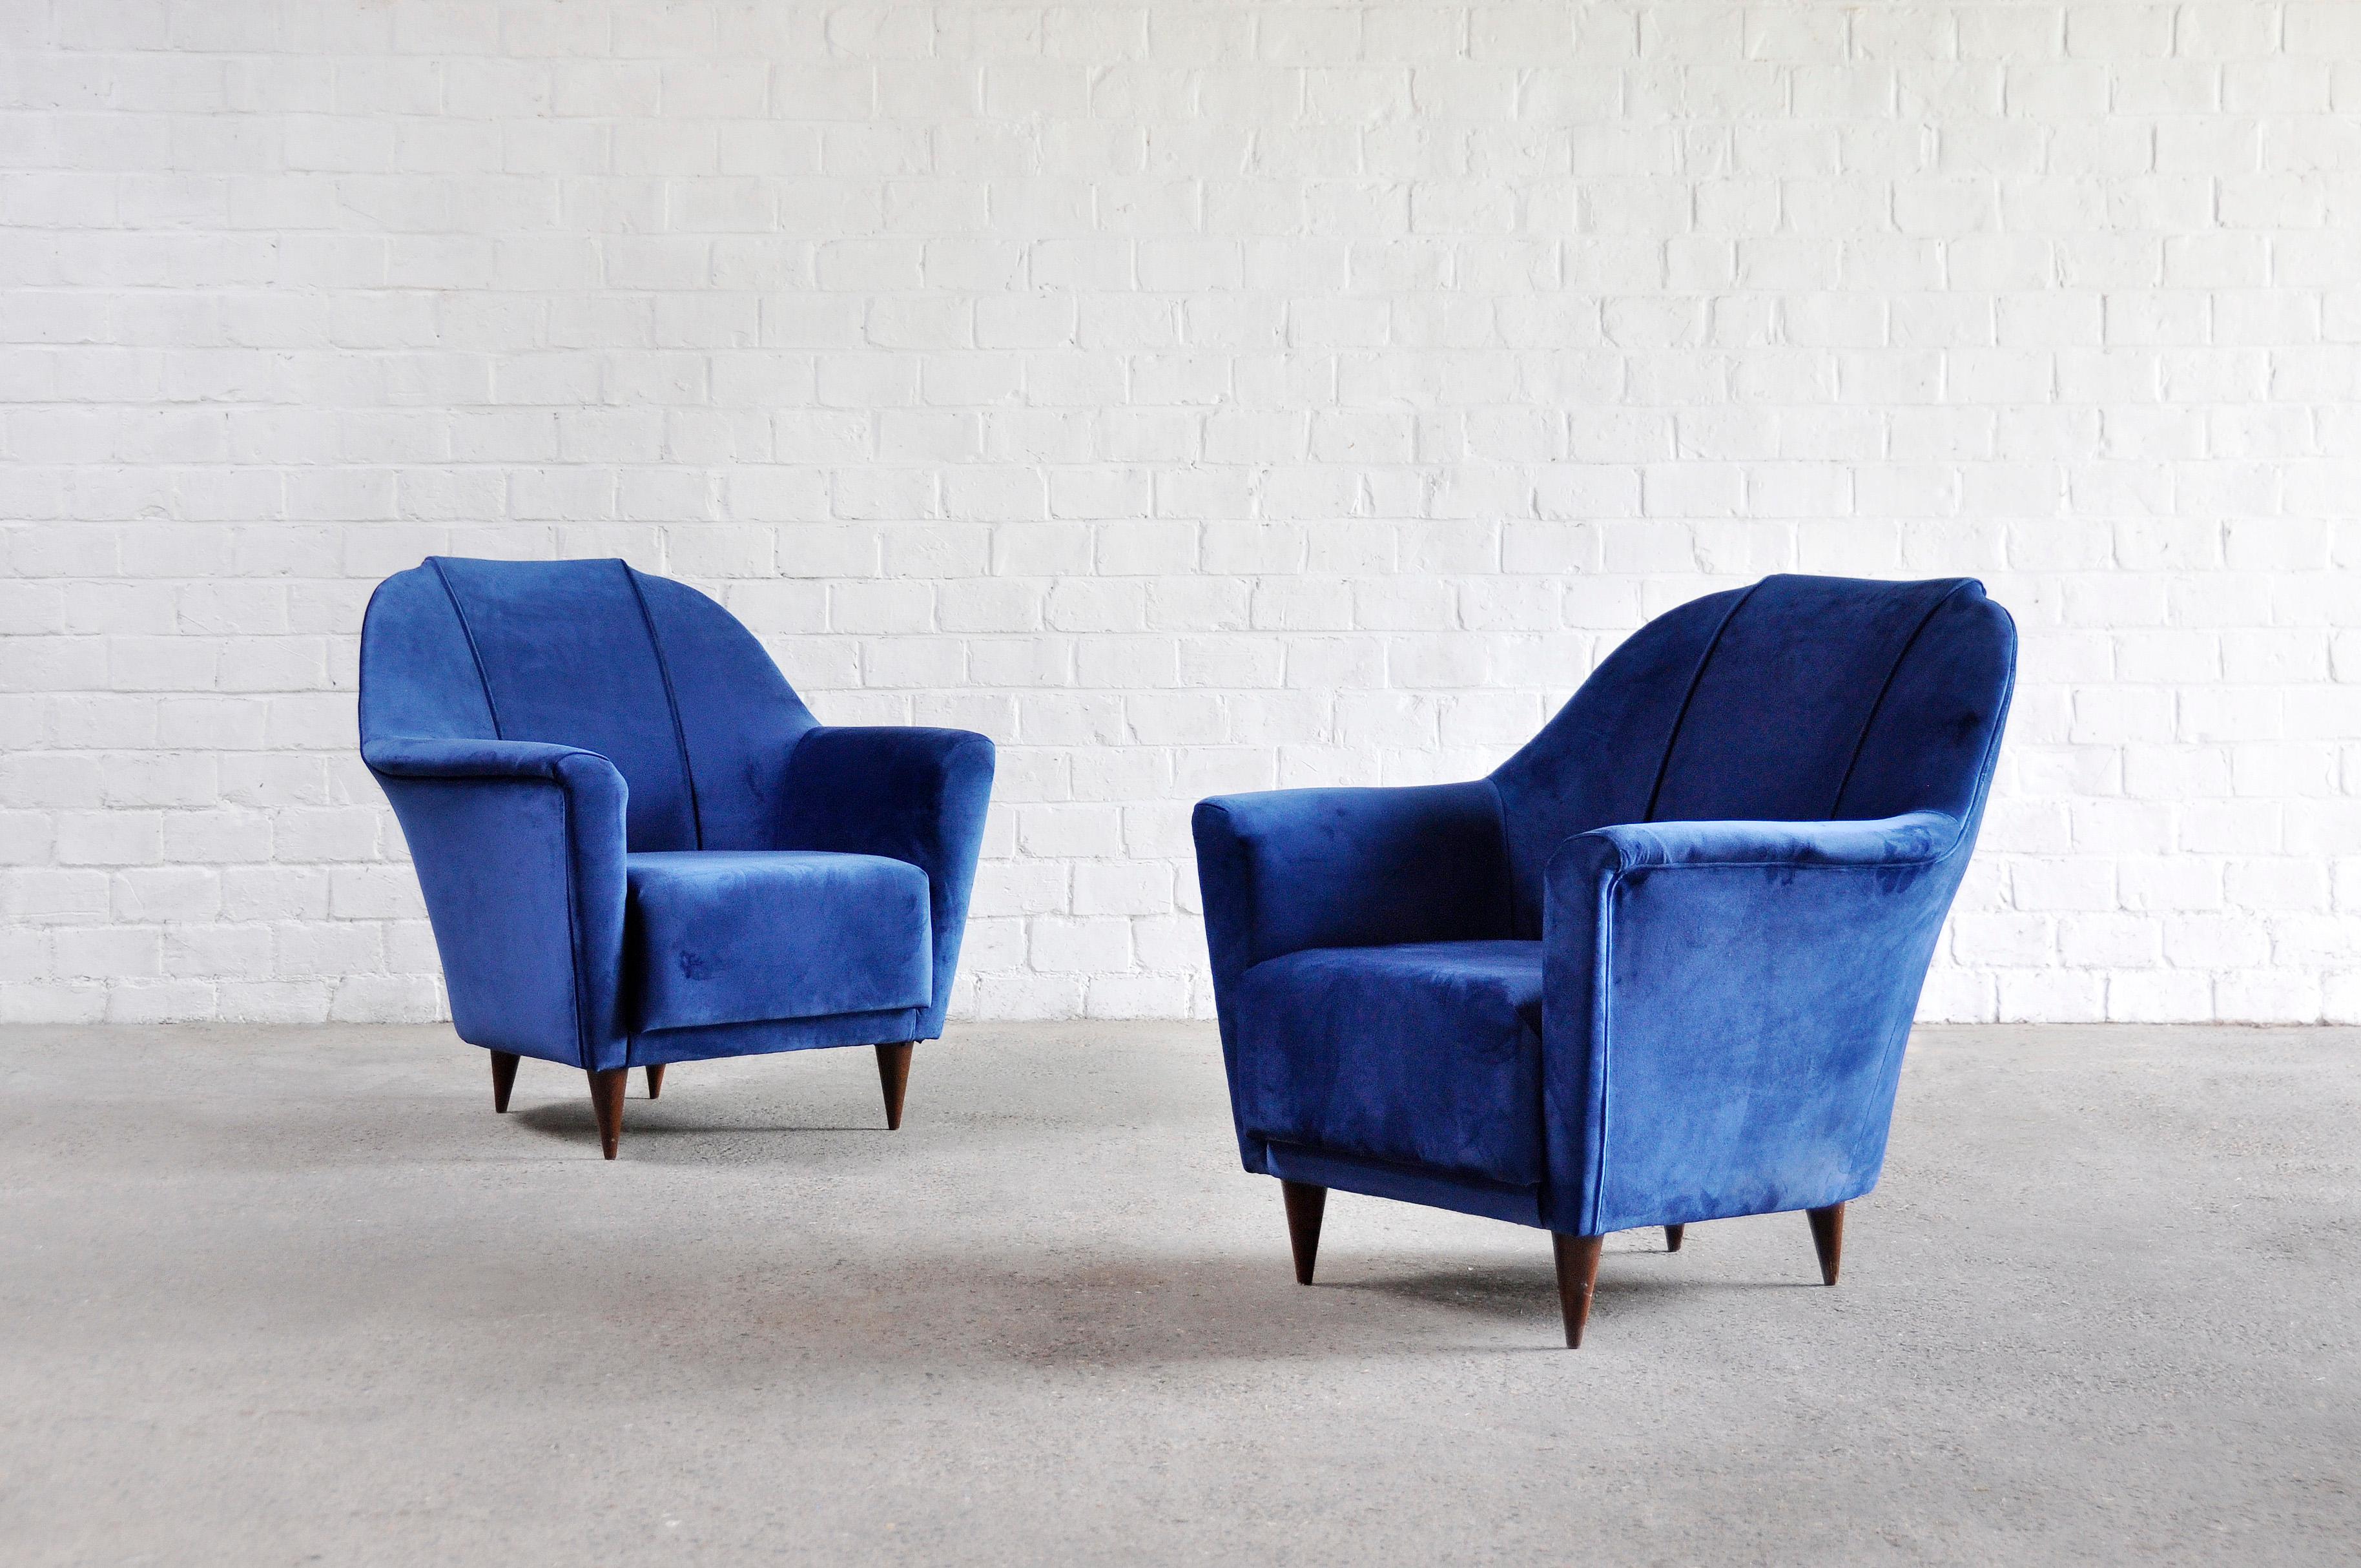 Ein Paar Sessel aus der Mitte des Jahrhunderts von Ico Parisi für Ariberto Colombo Cantu, entworfen in den 1950er Jahren. Die ausgeprägten Kurven und Linien in Kombination mit dem luxuriösen Samtstoff verleihen diesen Stühlen eine sehr schicke und